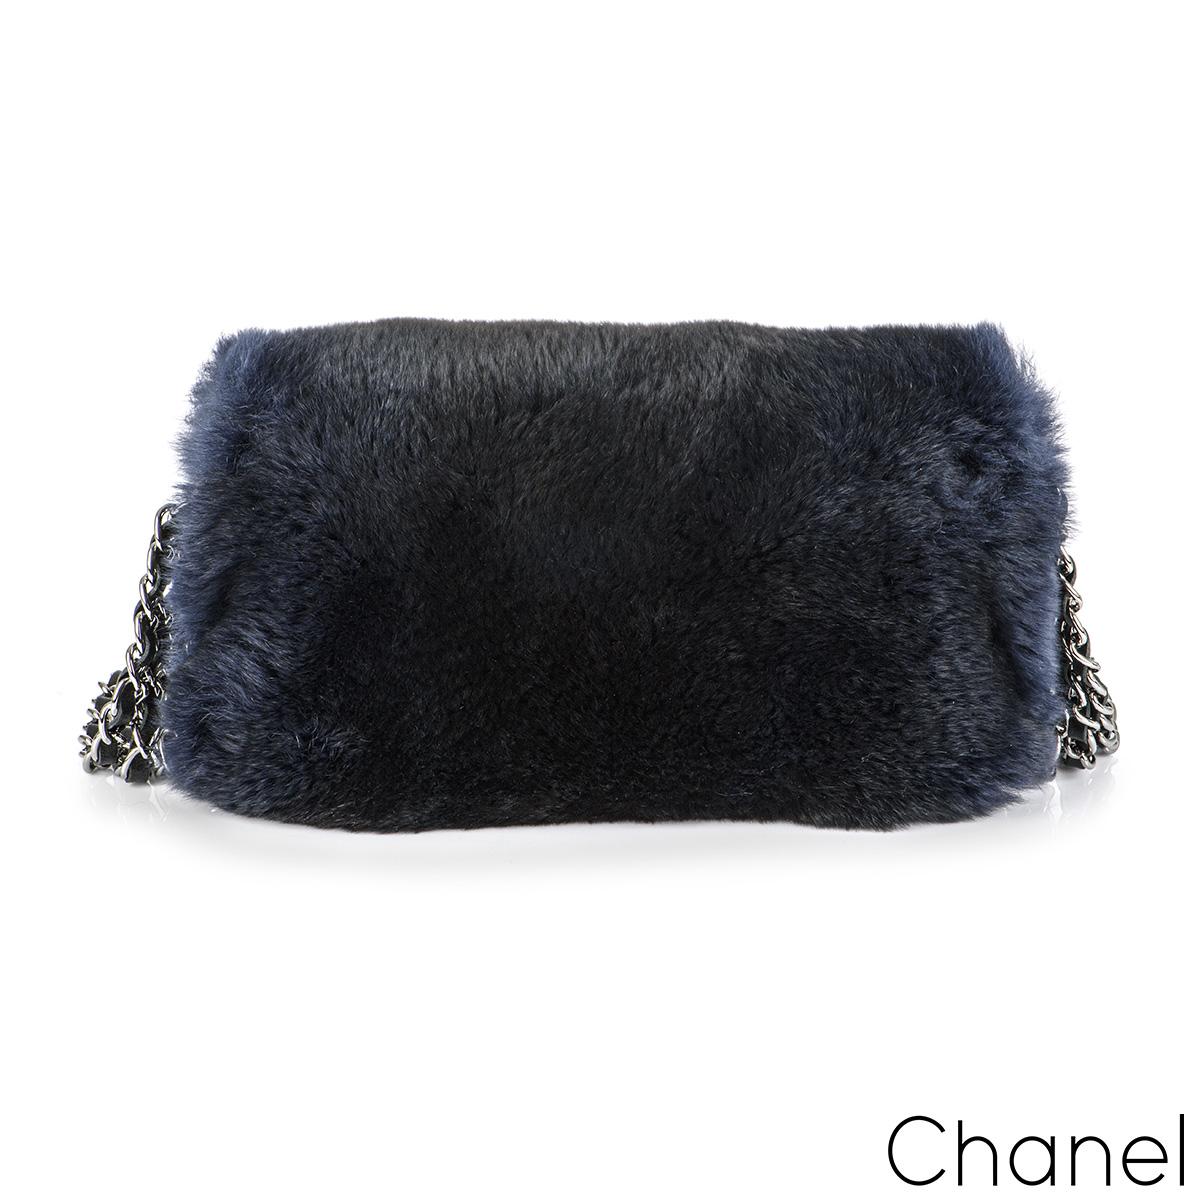 Un sac à rabat Chanel Orylag, élégant et chic, issu de la collection automne-hiver 2015 Acte 1. L'extérieur de ce sac est recouvert d'une fourrure orylag marine et d'une quincaillerie argentée vieillie. Il est doté de la fermeture à tour de rôle CC